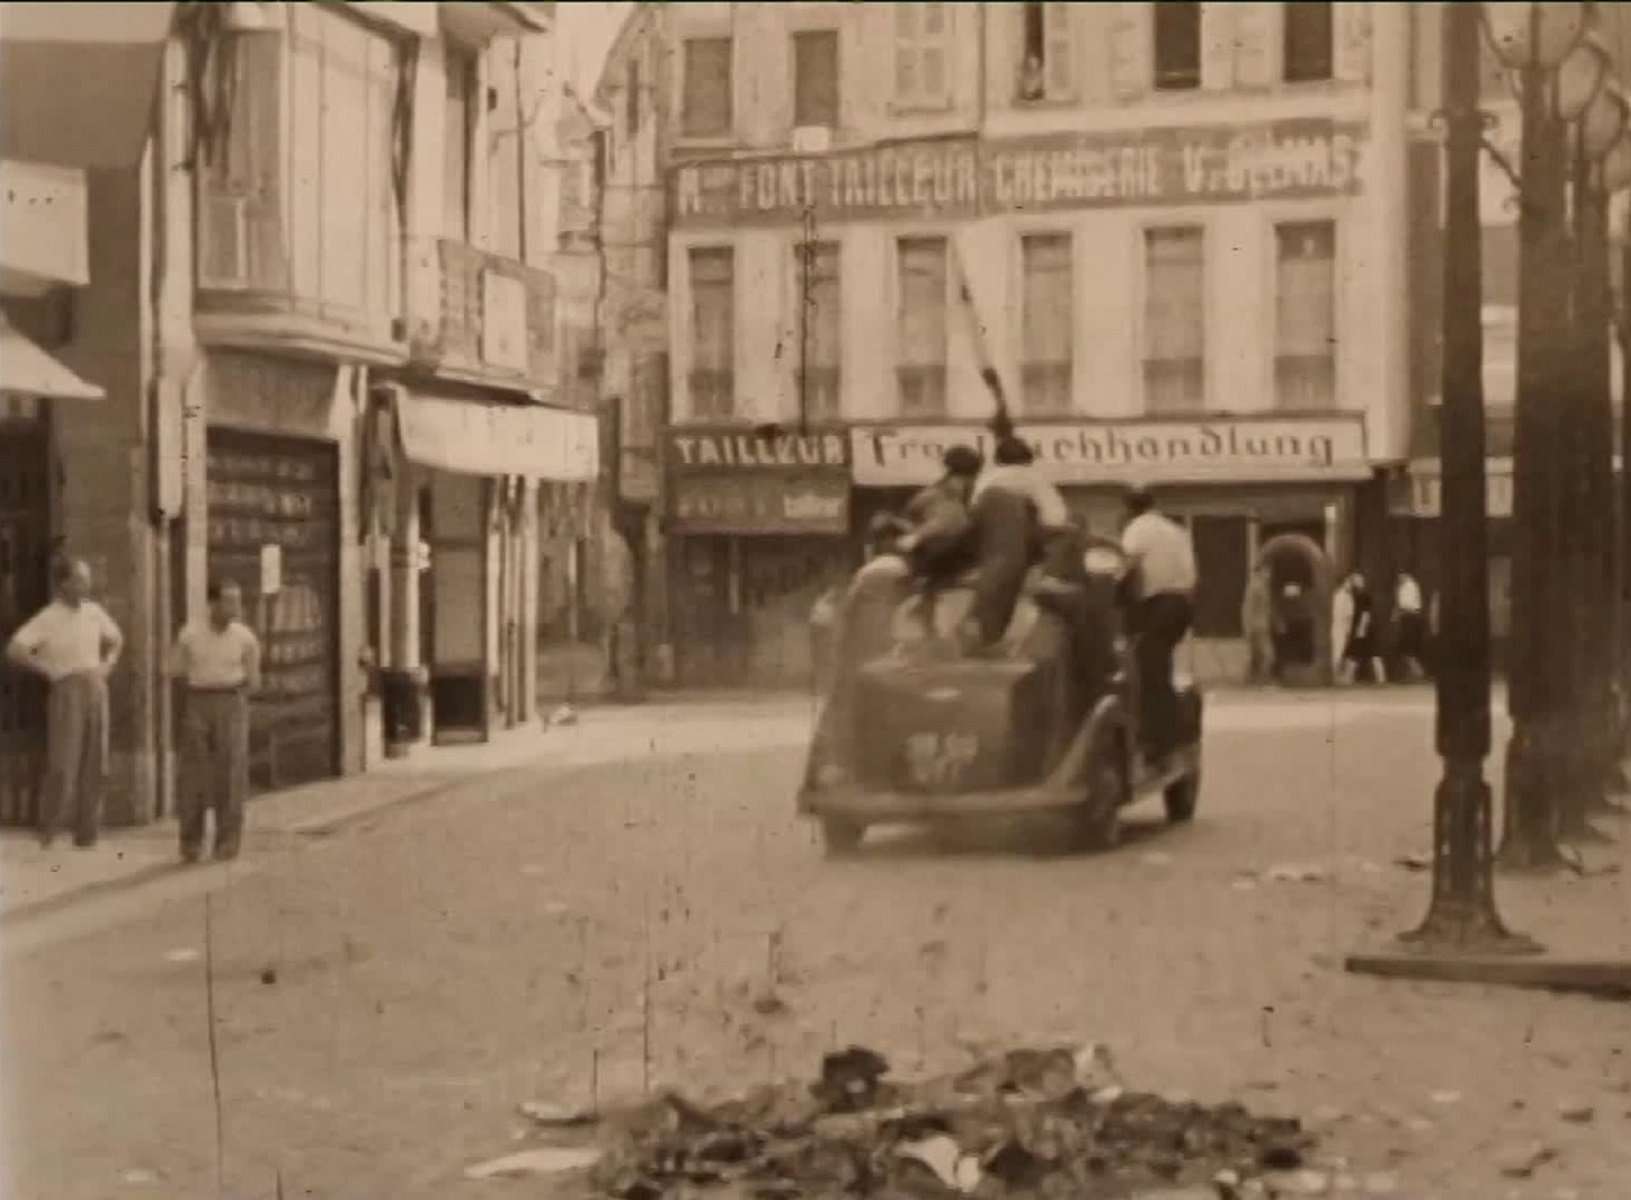 France 3 emite imágenes inéditas de la liberación de Perpinyà de la ocupación nazi